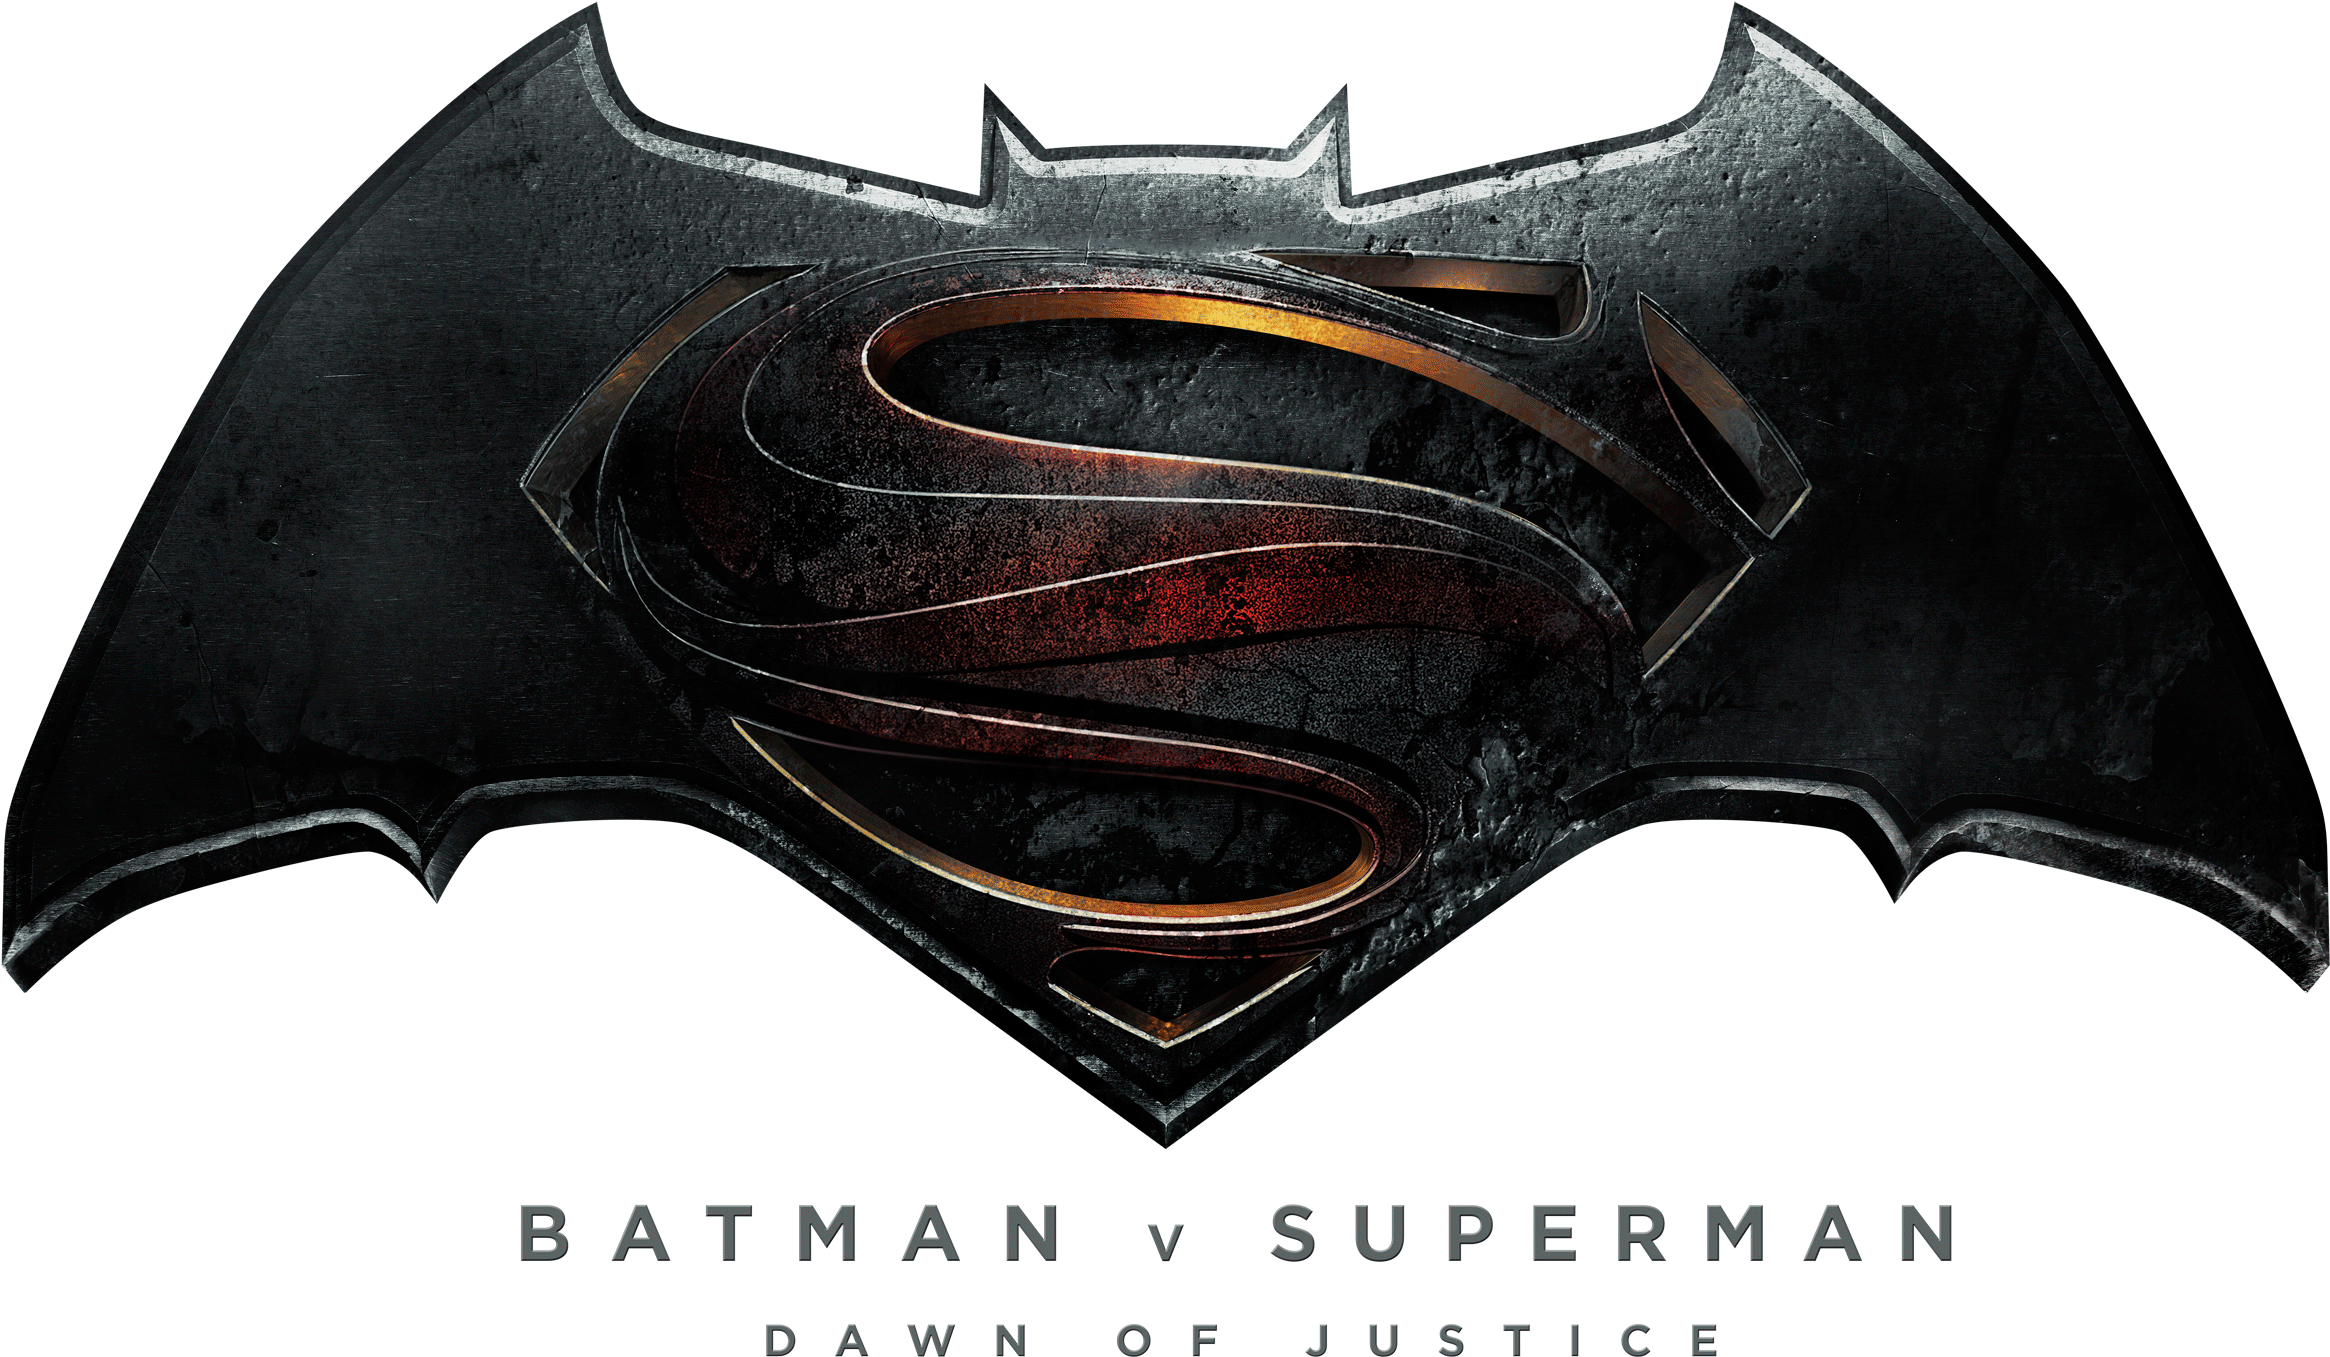 Batman Vs Superman Logo Hd - Clip Art Library